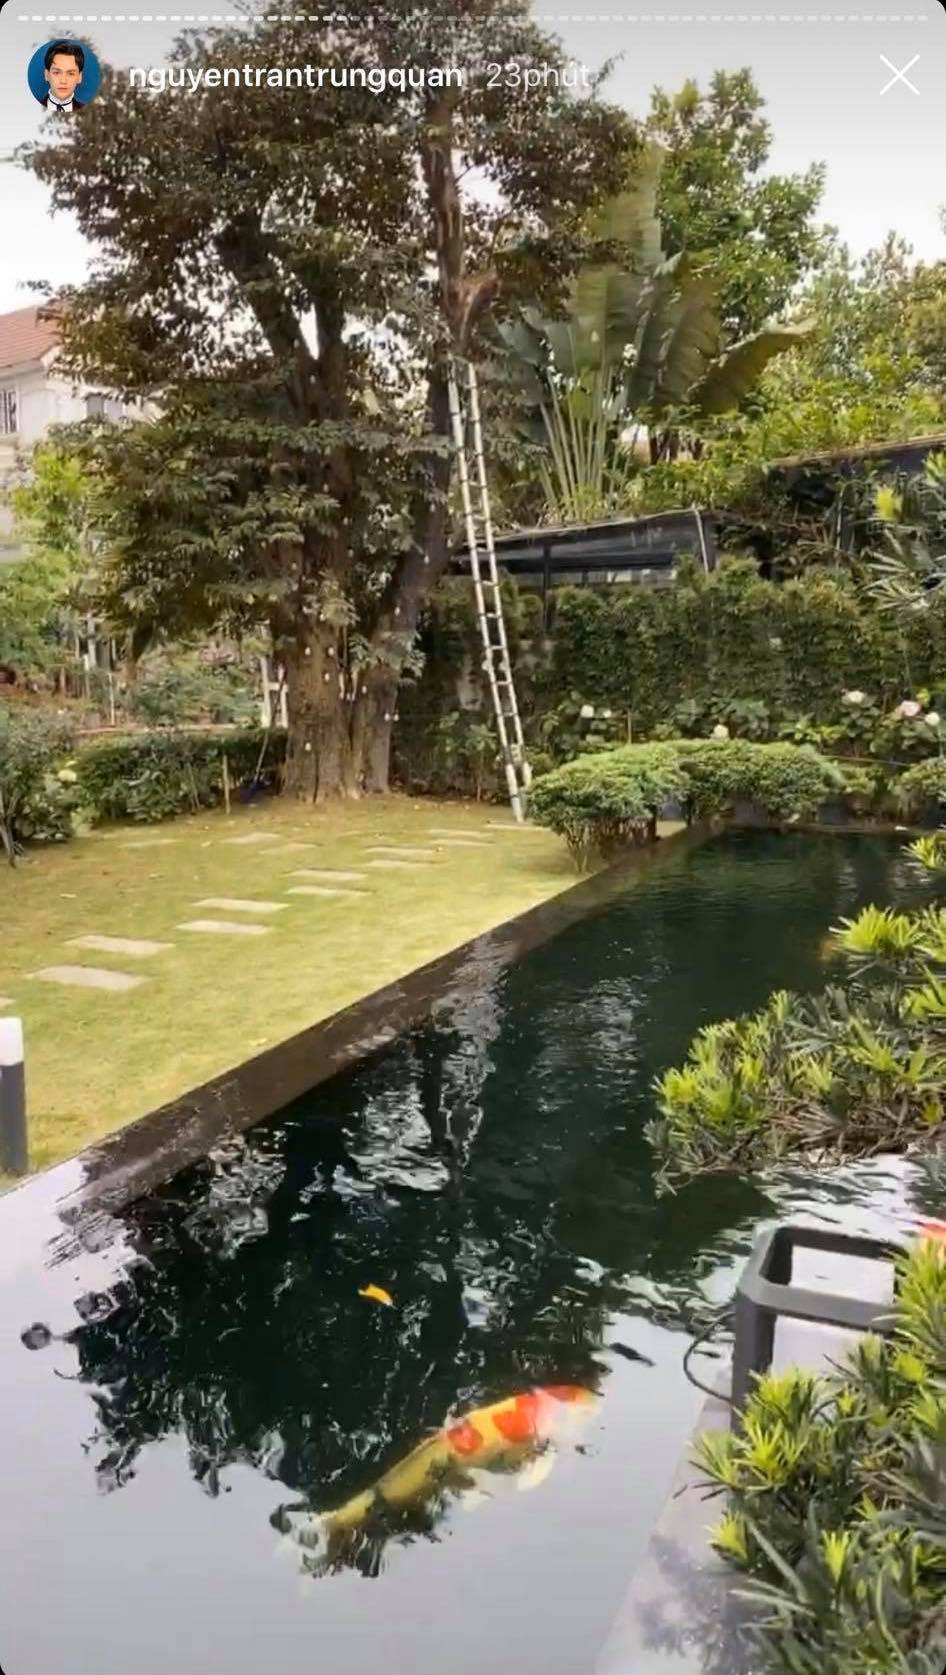  
Biệt thự bề thế của gia đình Nguyễn Trần Trung Quân tại Hà Nội, một phần sân vườn của căn nhà (Ảnh: Chụp màn hình)